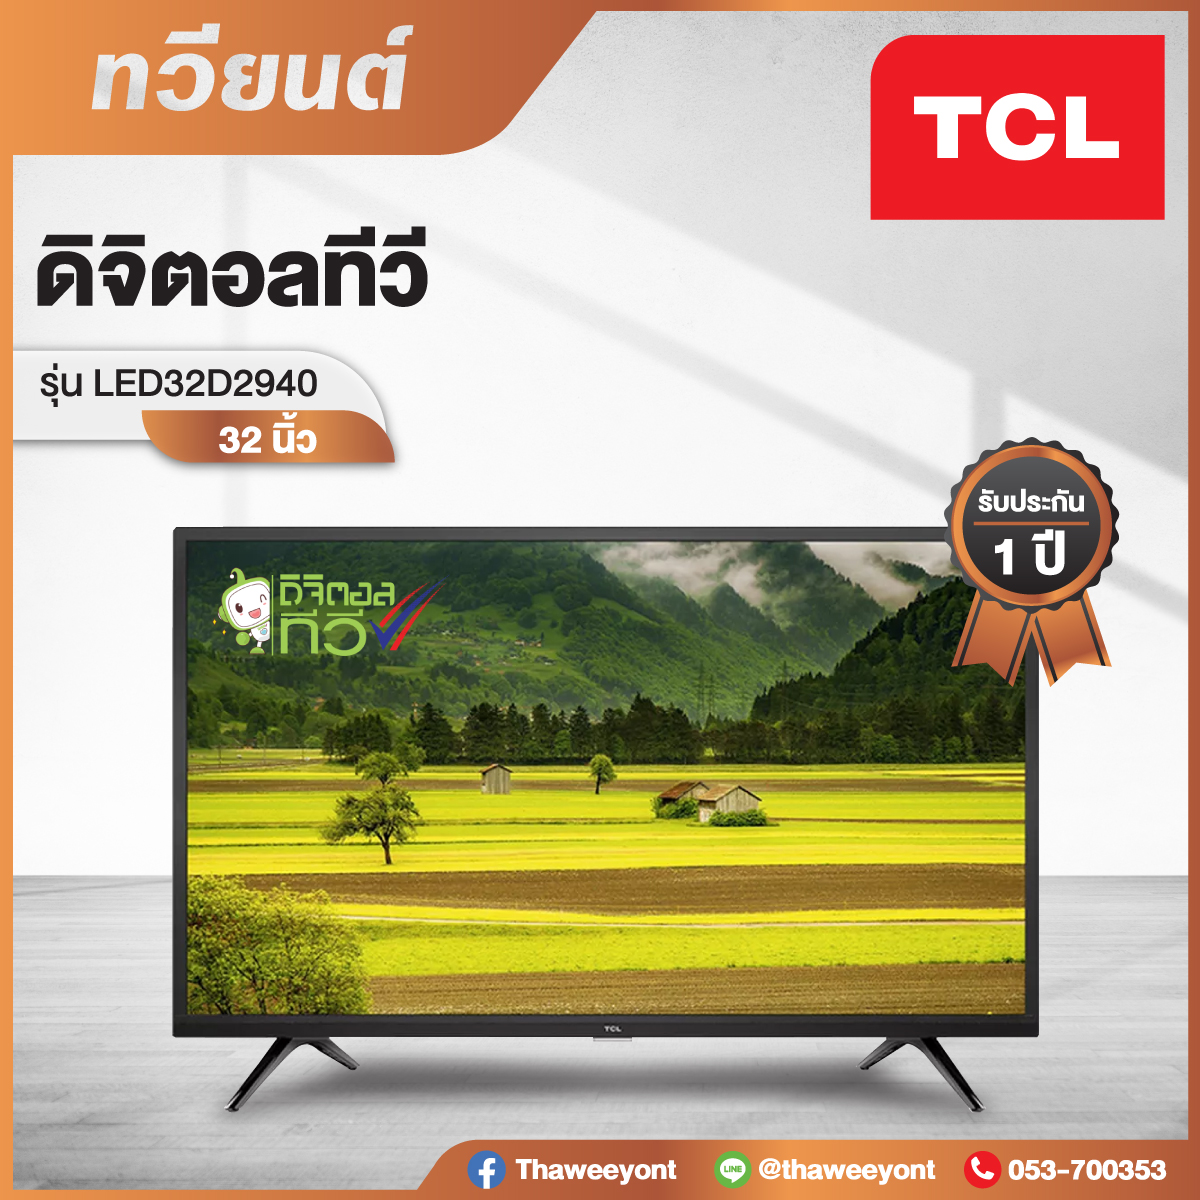 Digital TV ยี่ห้อ TCL รุ่น LED32D2940 ขนาด 32 นิ้ว ความชัด 